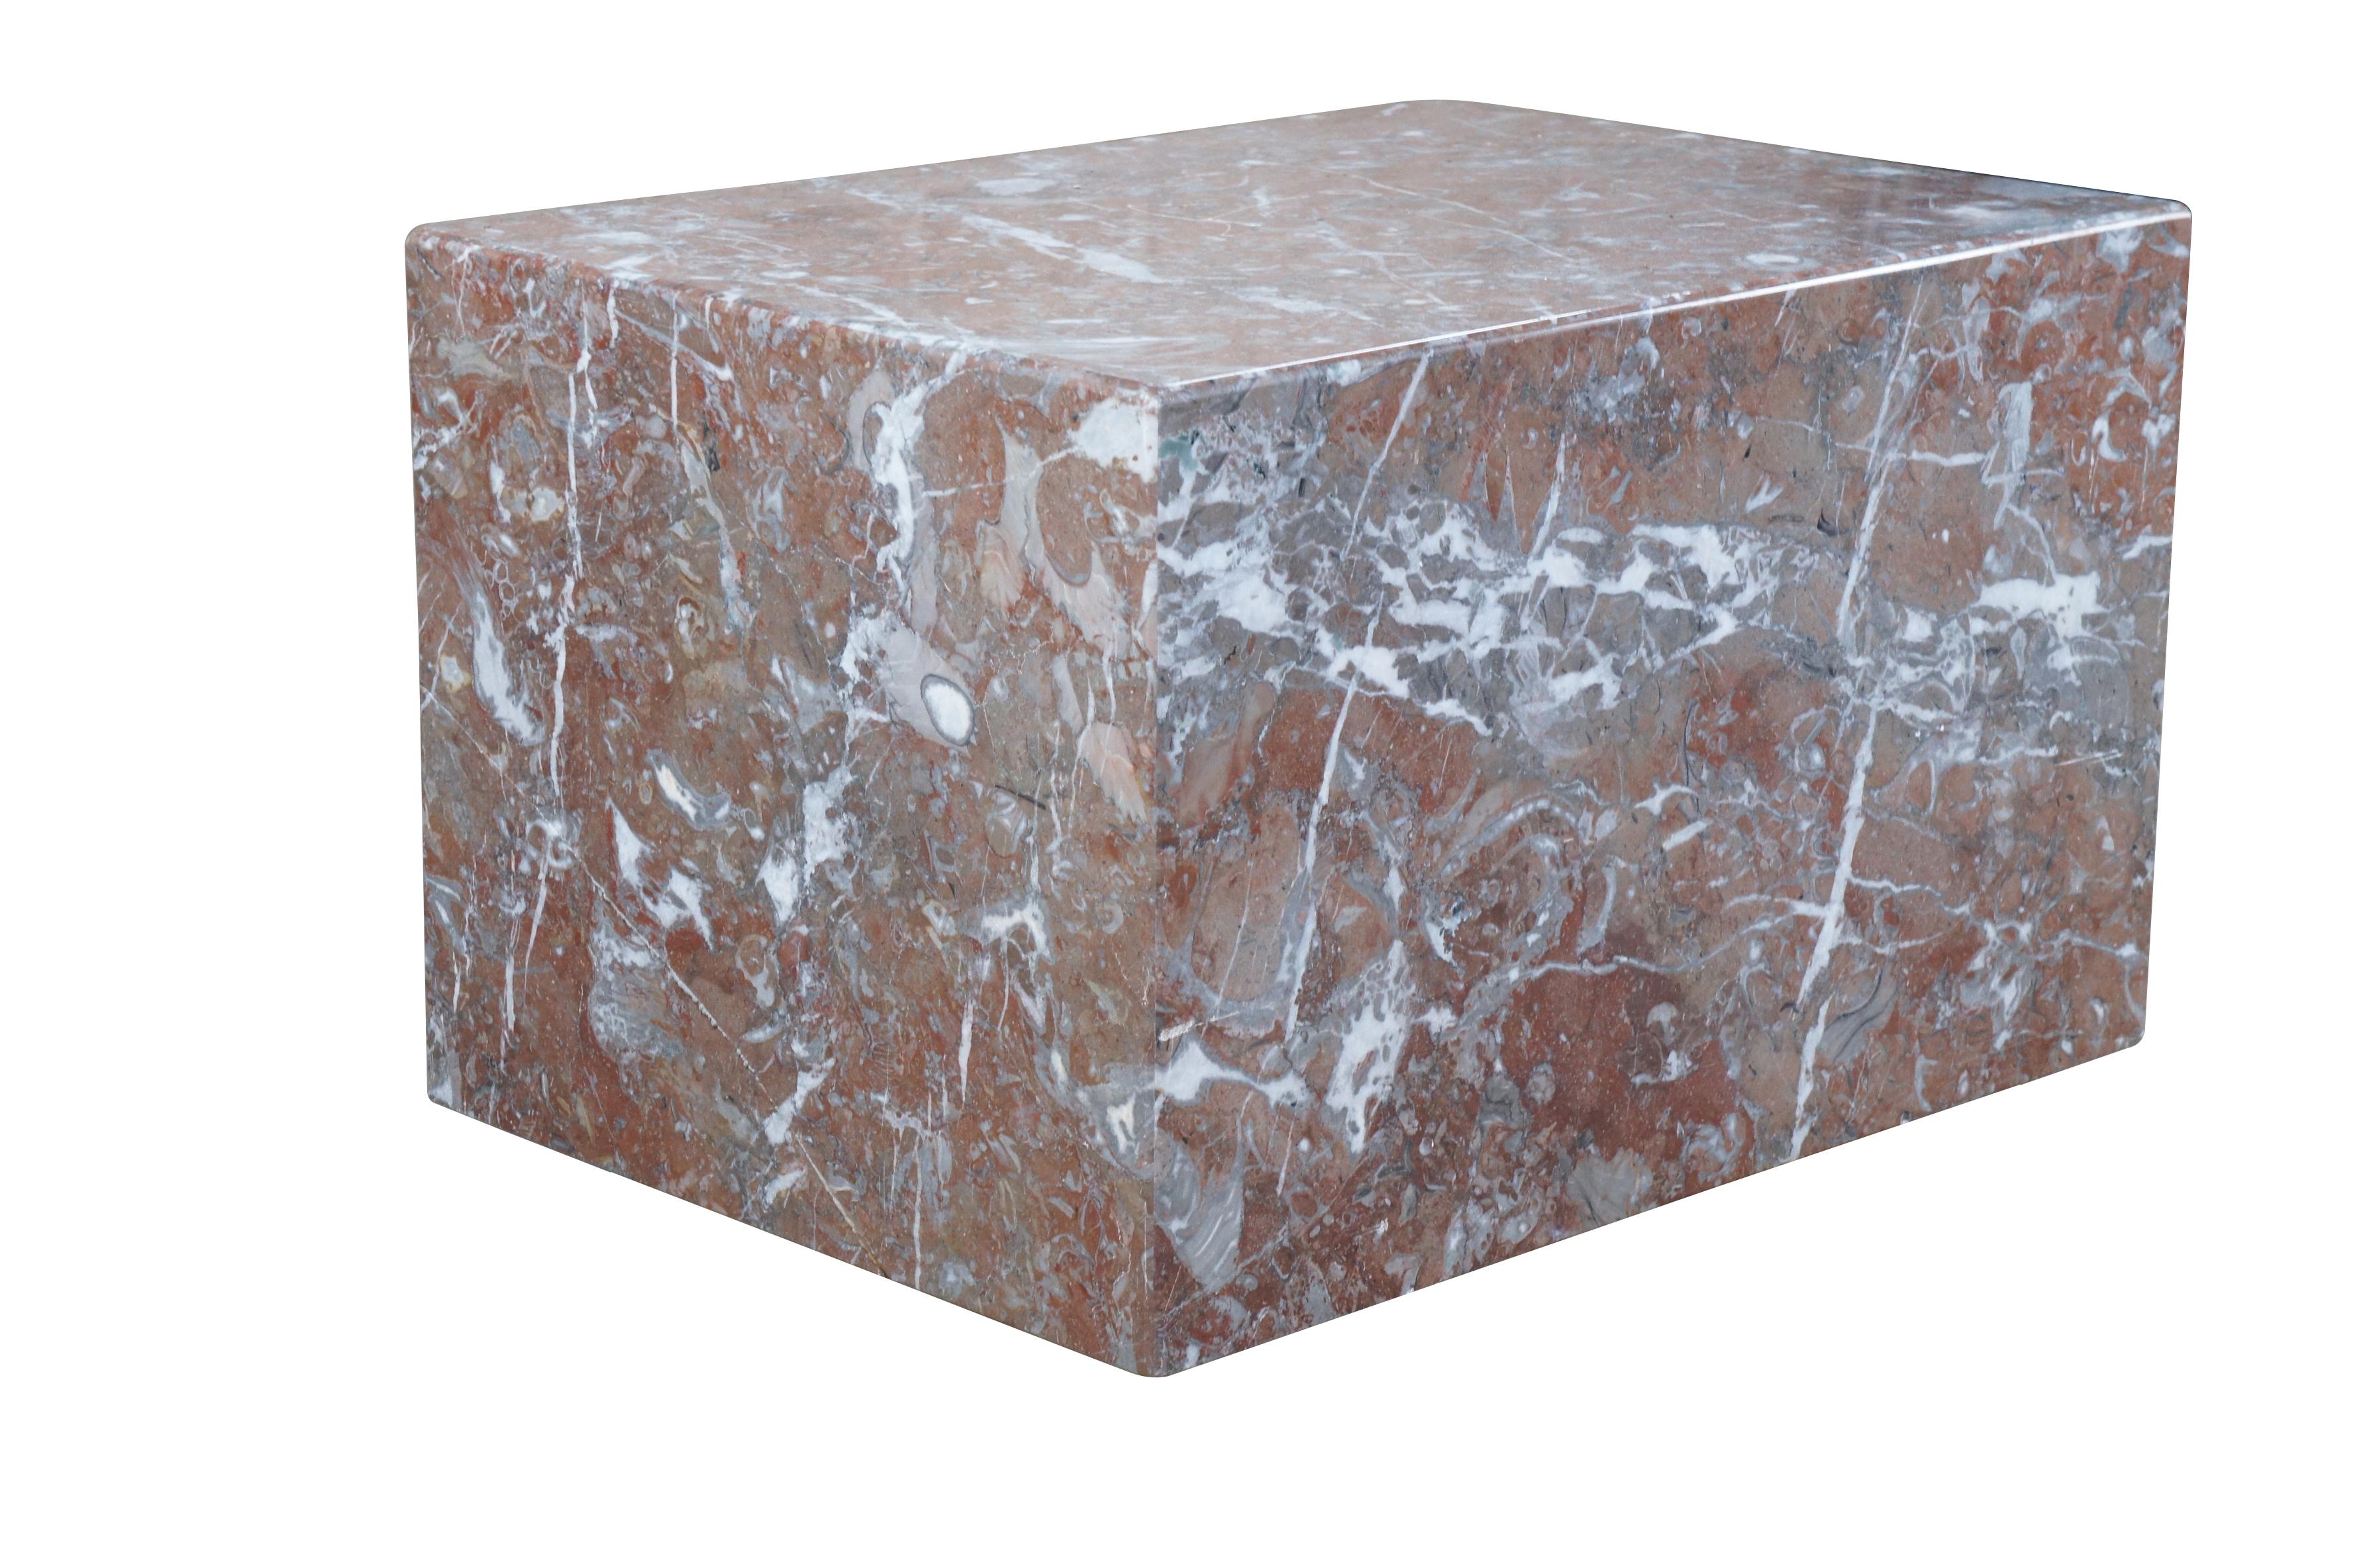 Socle italien minimaliste en forme de cube, vers les années 1970. Fabriqué en marbre de couleur rose et grise.  La base idéale pour exposer tout objet lourd, sculpture ou statue. Peut également être utilisée comme table d'appoint, d'appoint ou de